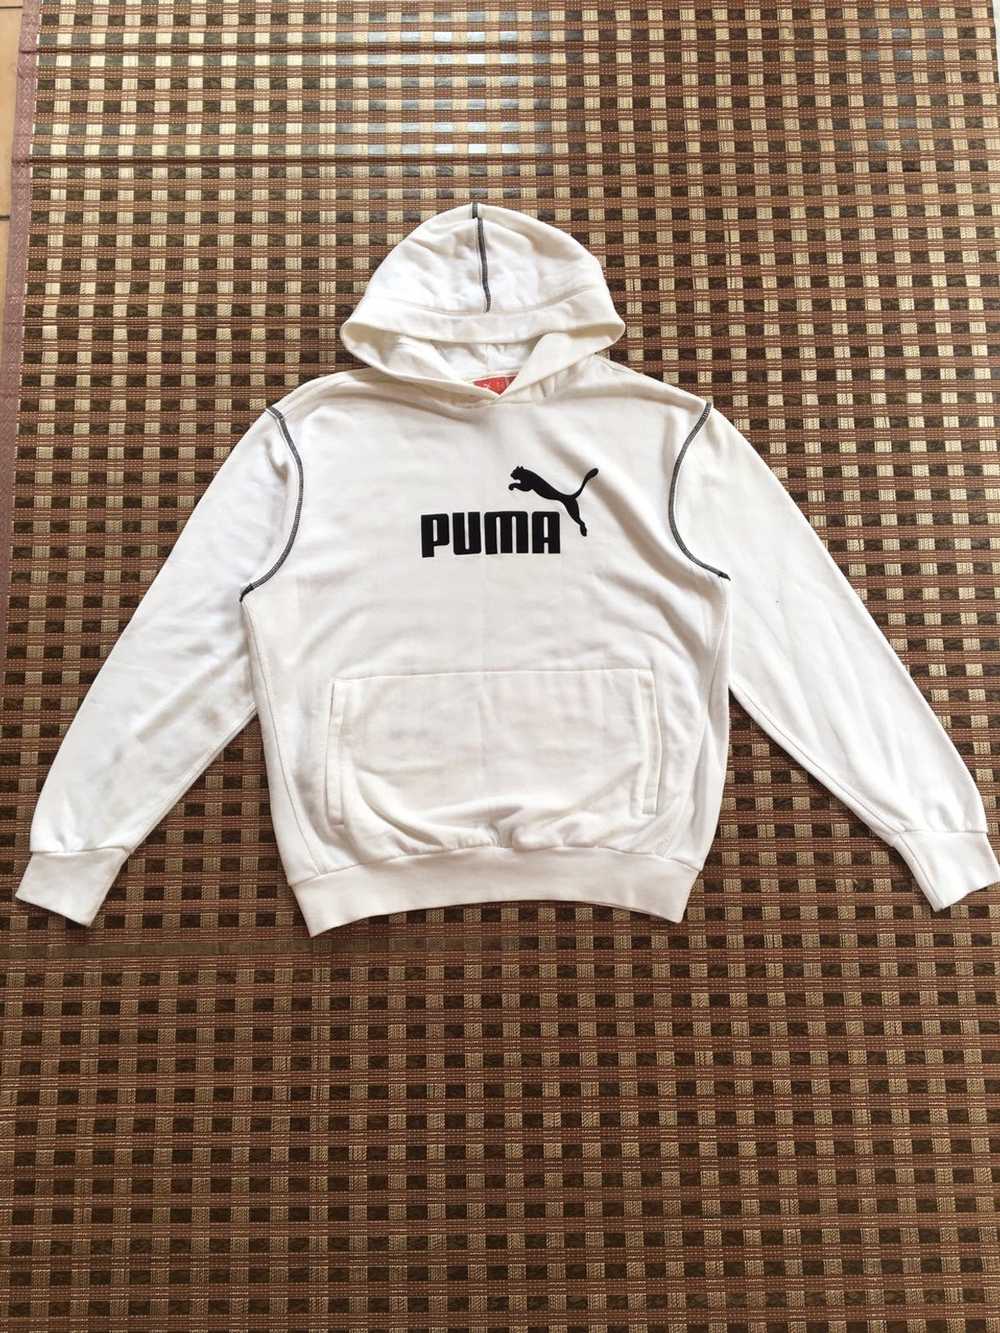 Puma × Vintage Puma Big Logo White Hoodie - image 1